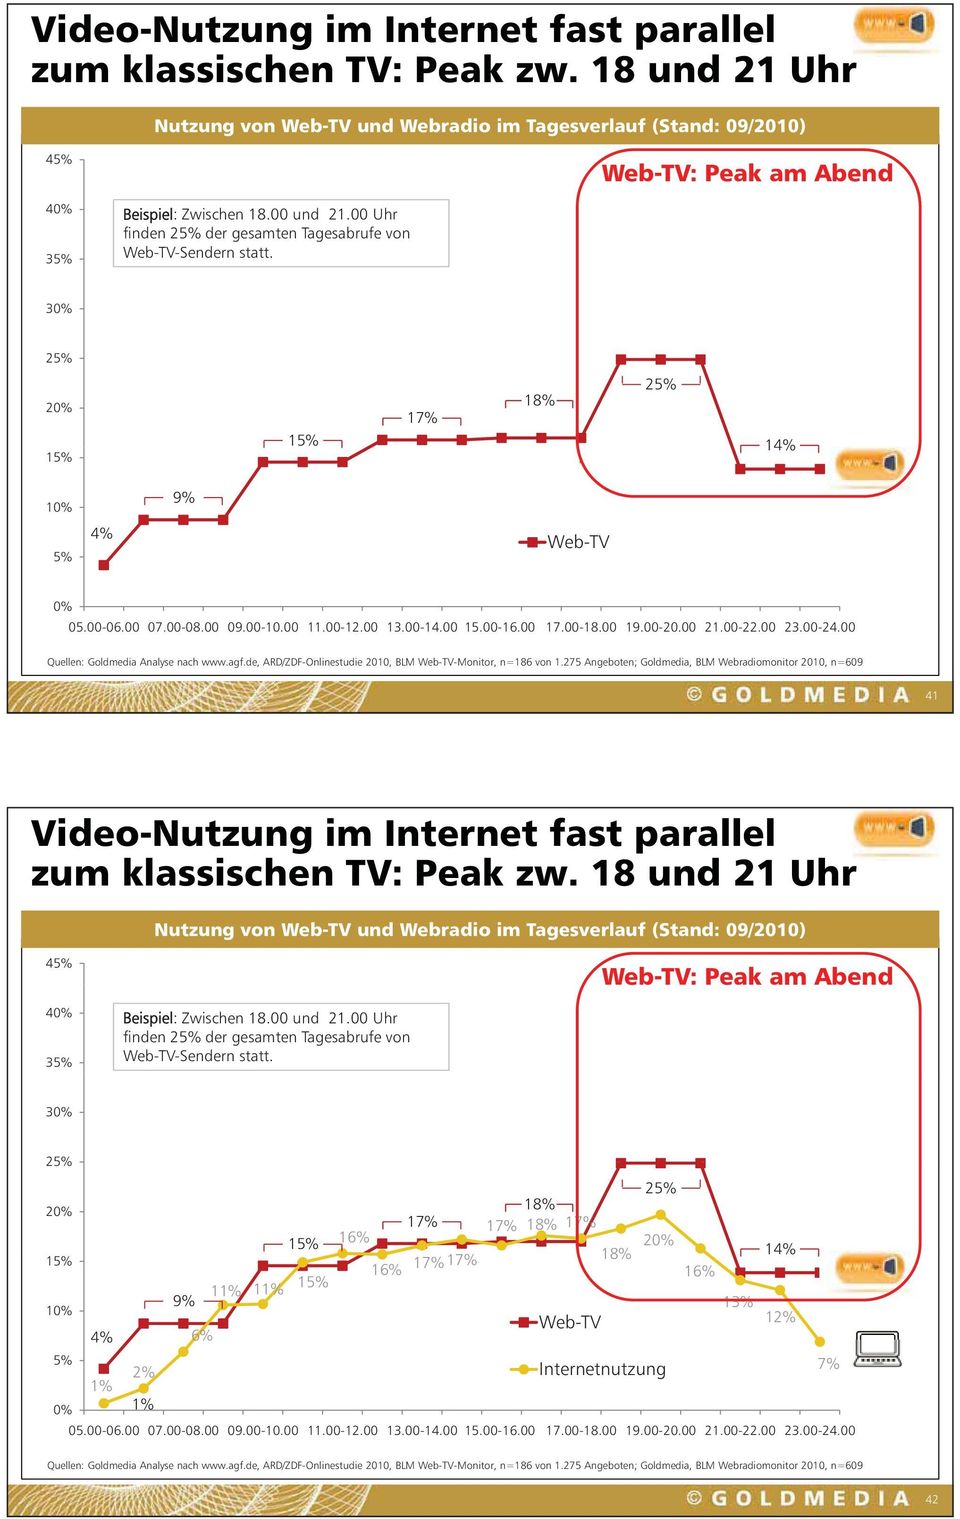 00 14 15.00-16.00 16 17.00-18.00 18 19.00-20.00 21.00-22.00 22 23.00-24.00 24 Quellen: Goldmedia Analyse nach www.agf.de, ARD/ZDF-Onlinestudie 2010, BLM Web-TV-Monitor, n=186 von 1.